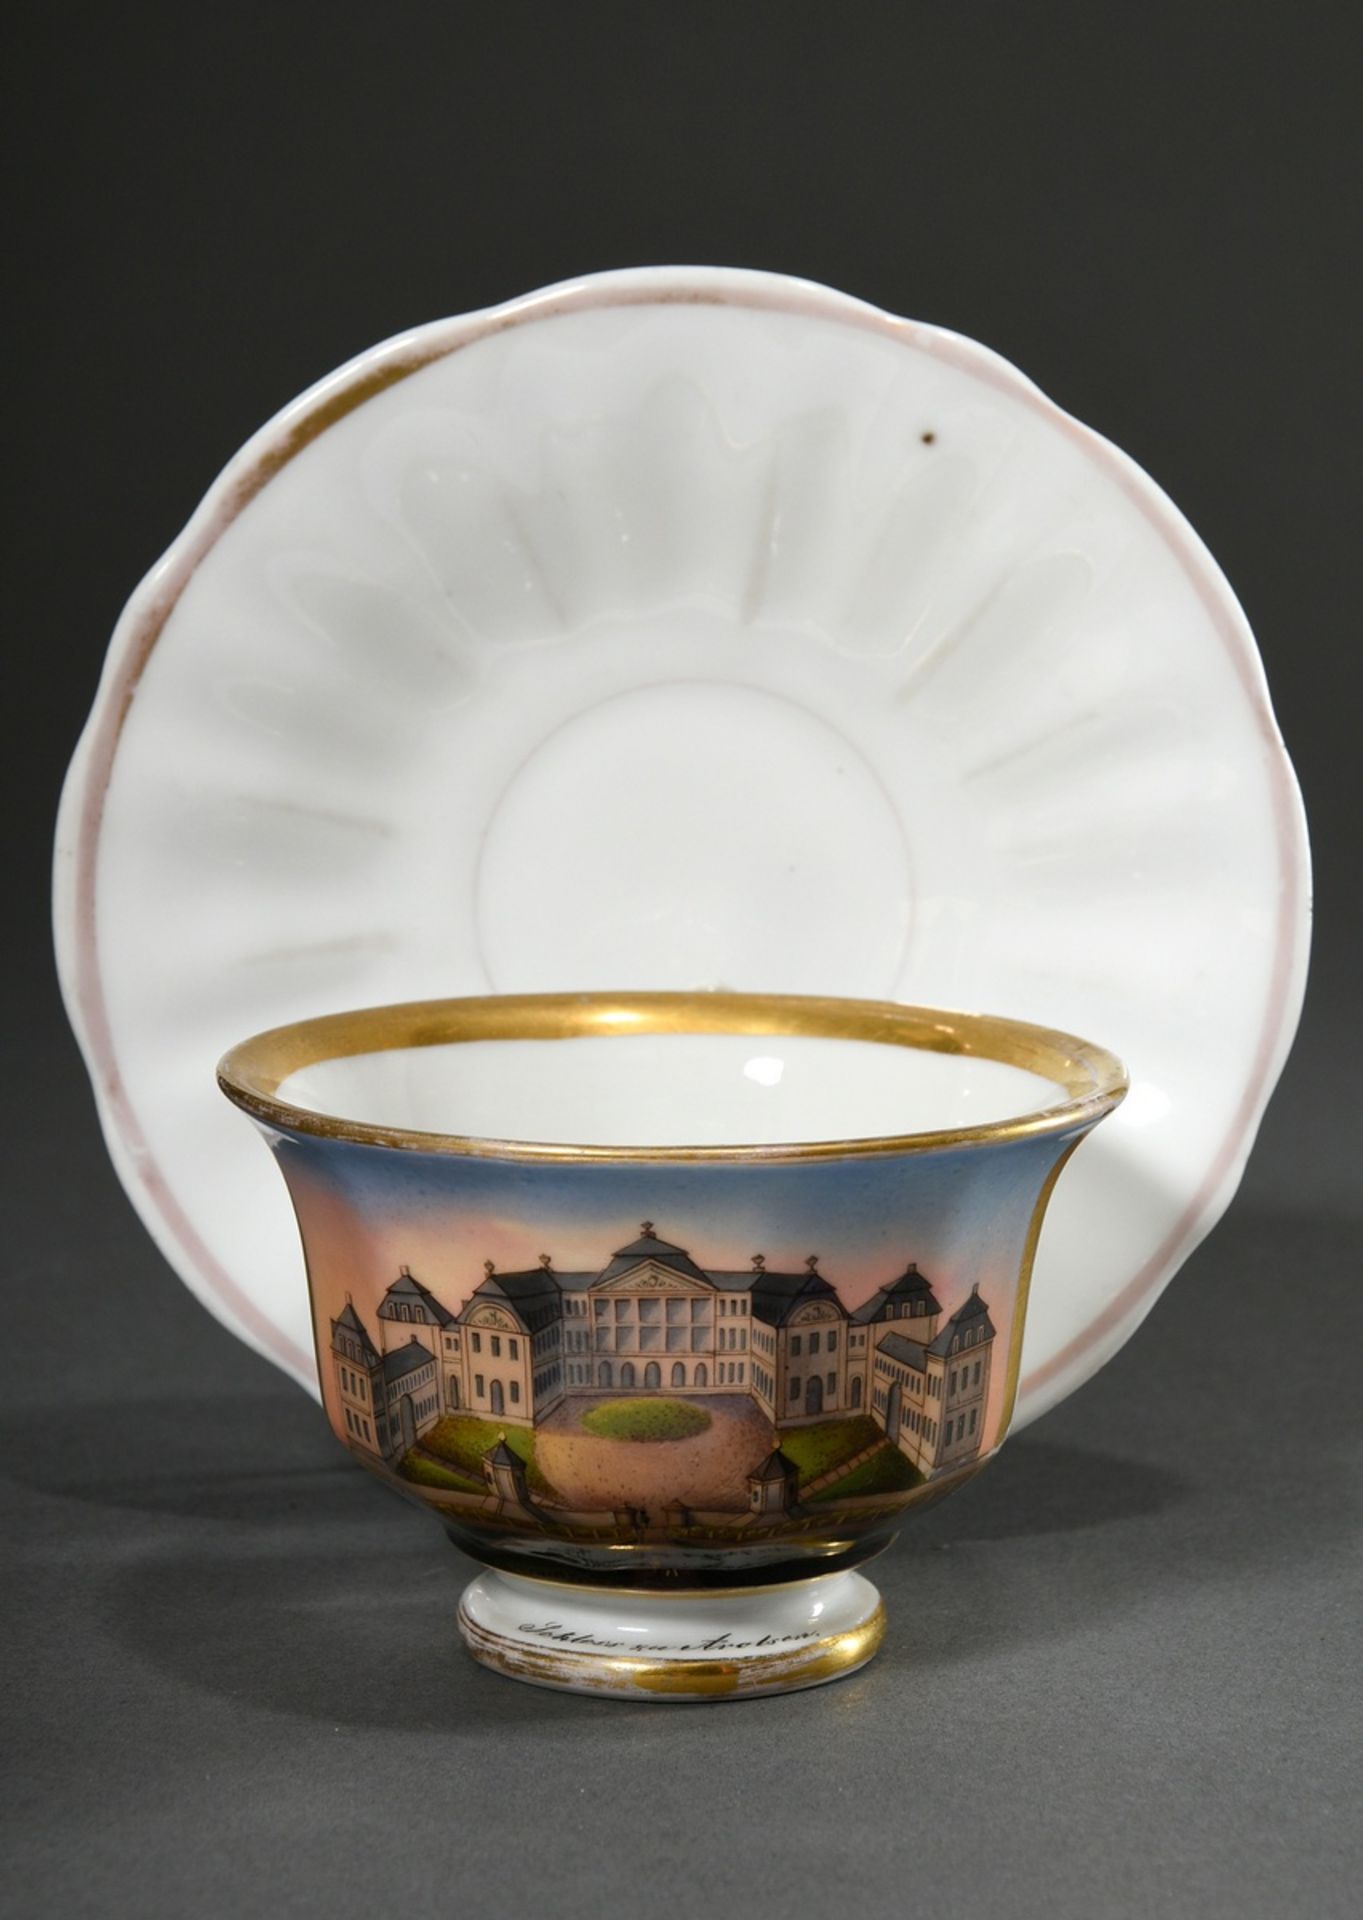 Biedermeier view cup with fine painting "Schloss zu Arolsen", Friedrich Adolph Schumann/Berlin, c.